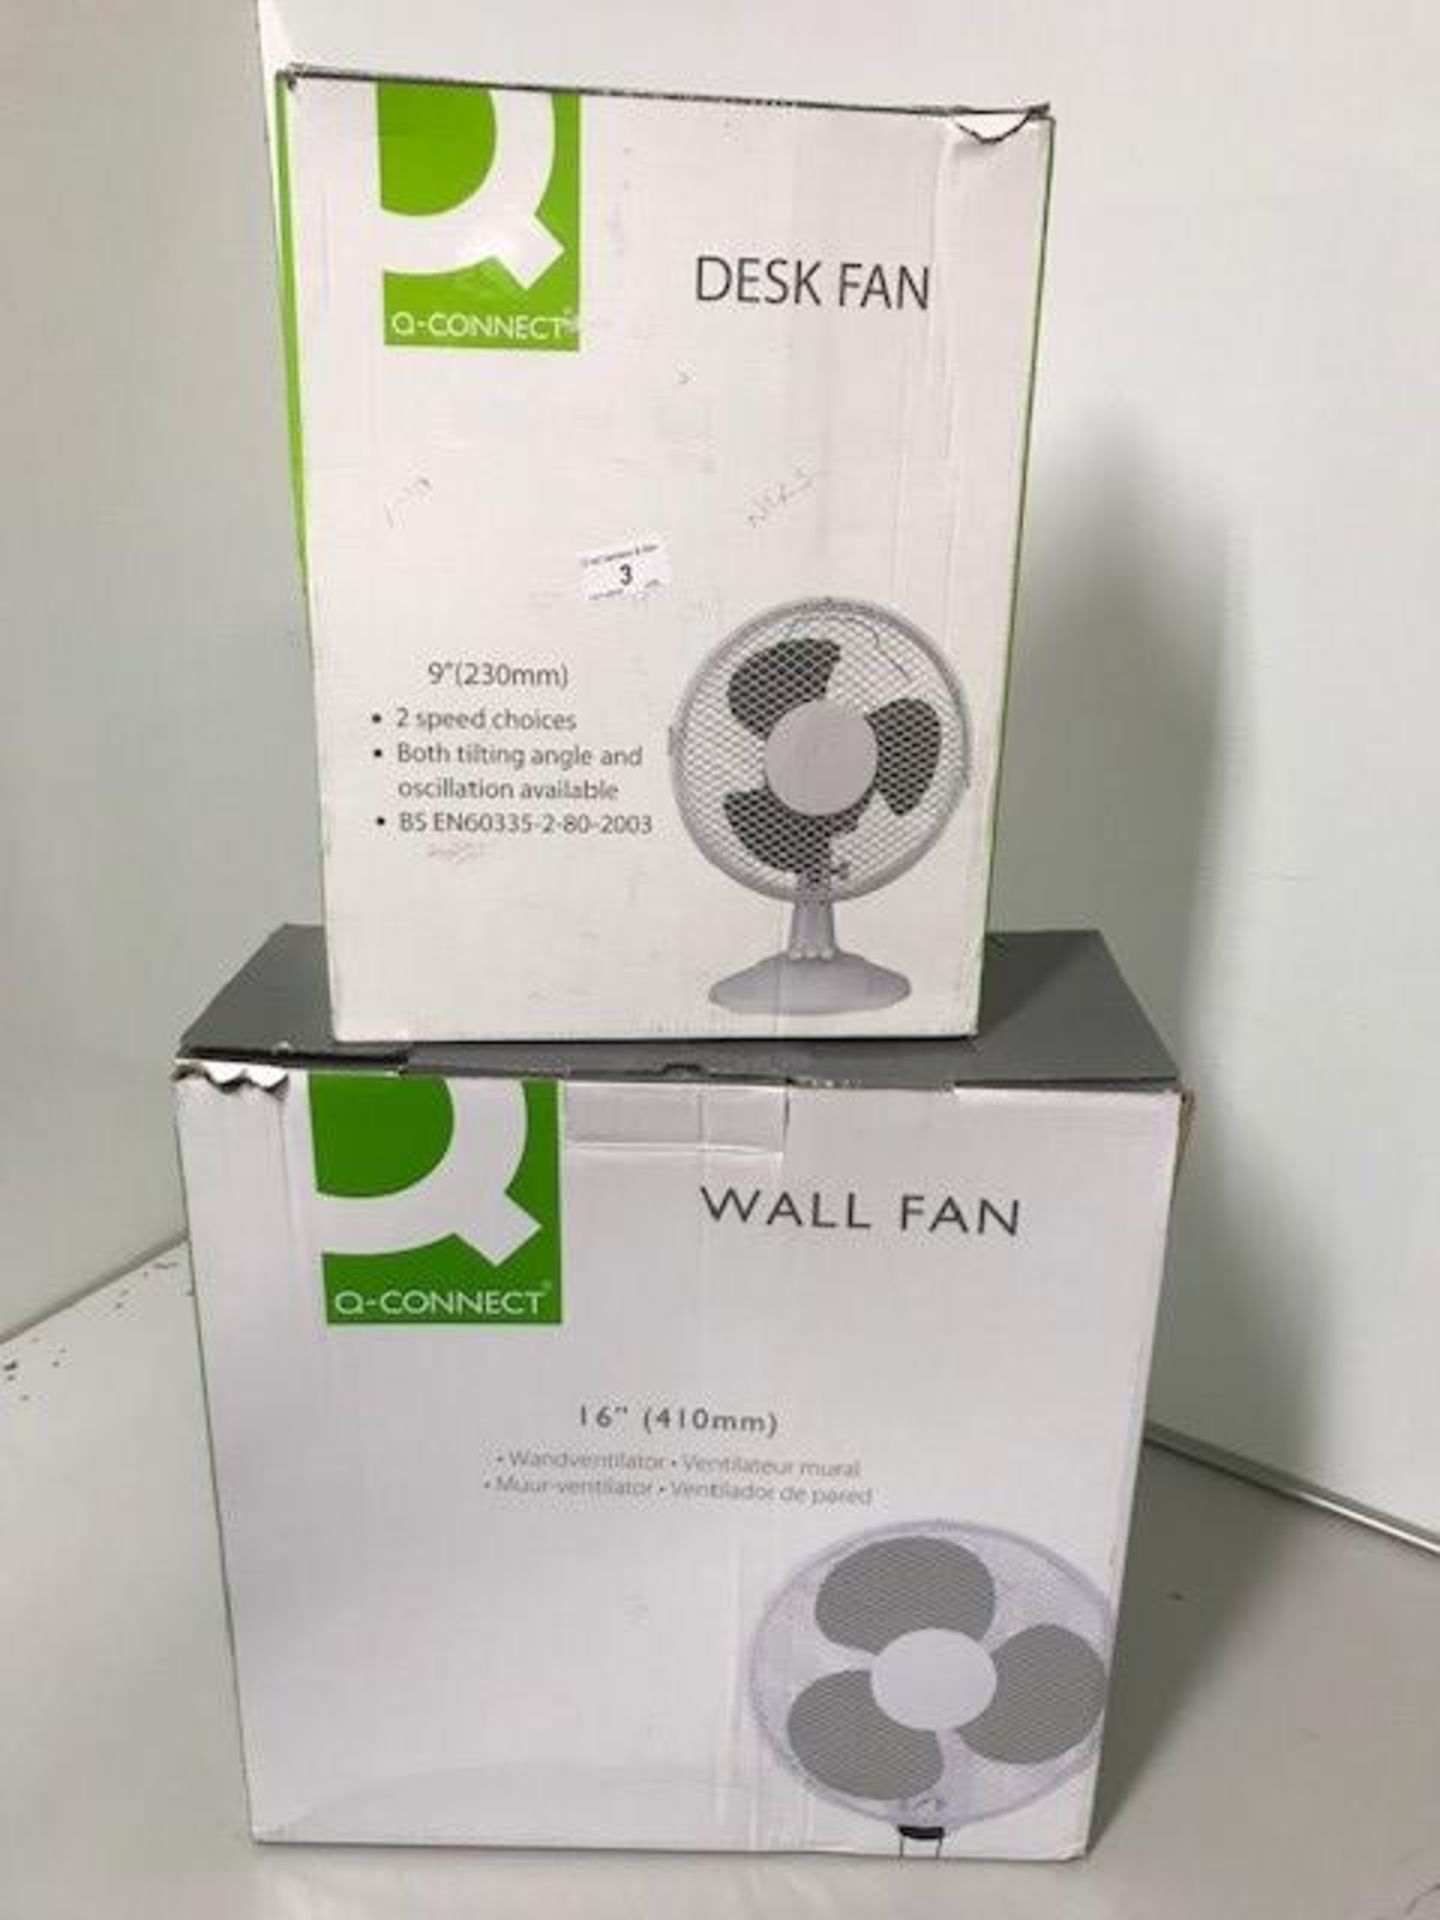 1 x 16" 3 speed oscillating wall fan and 1 x 9" 2 speed desk fan